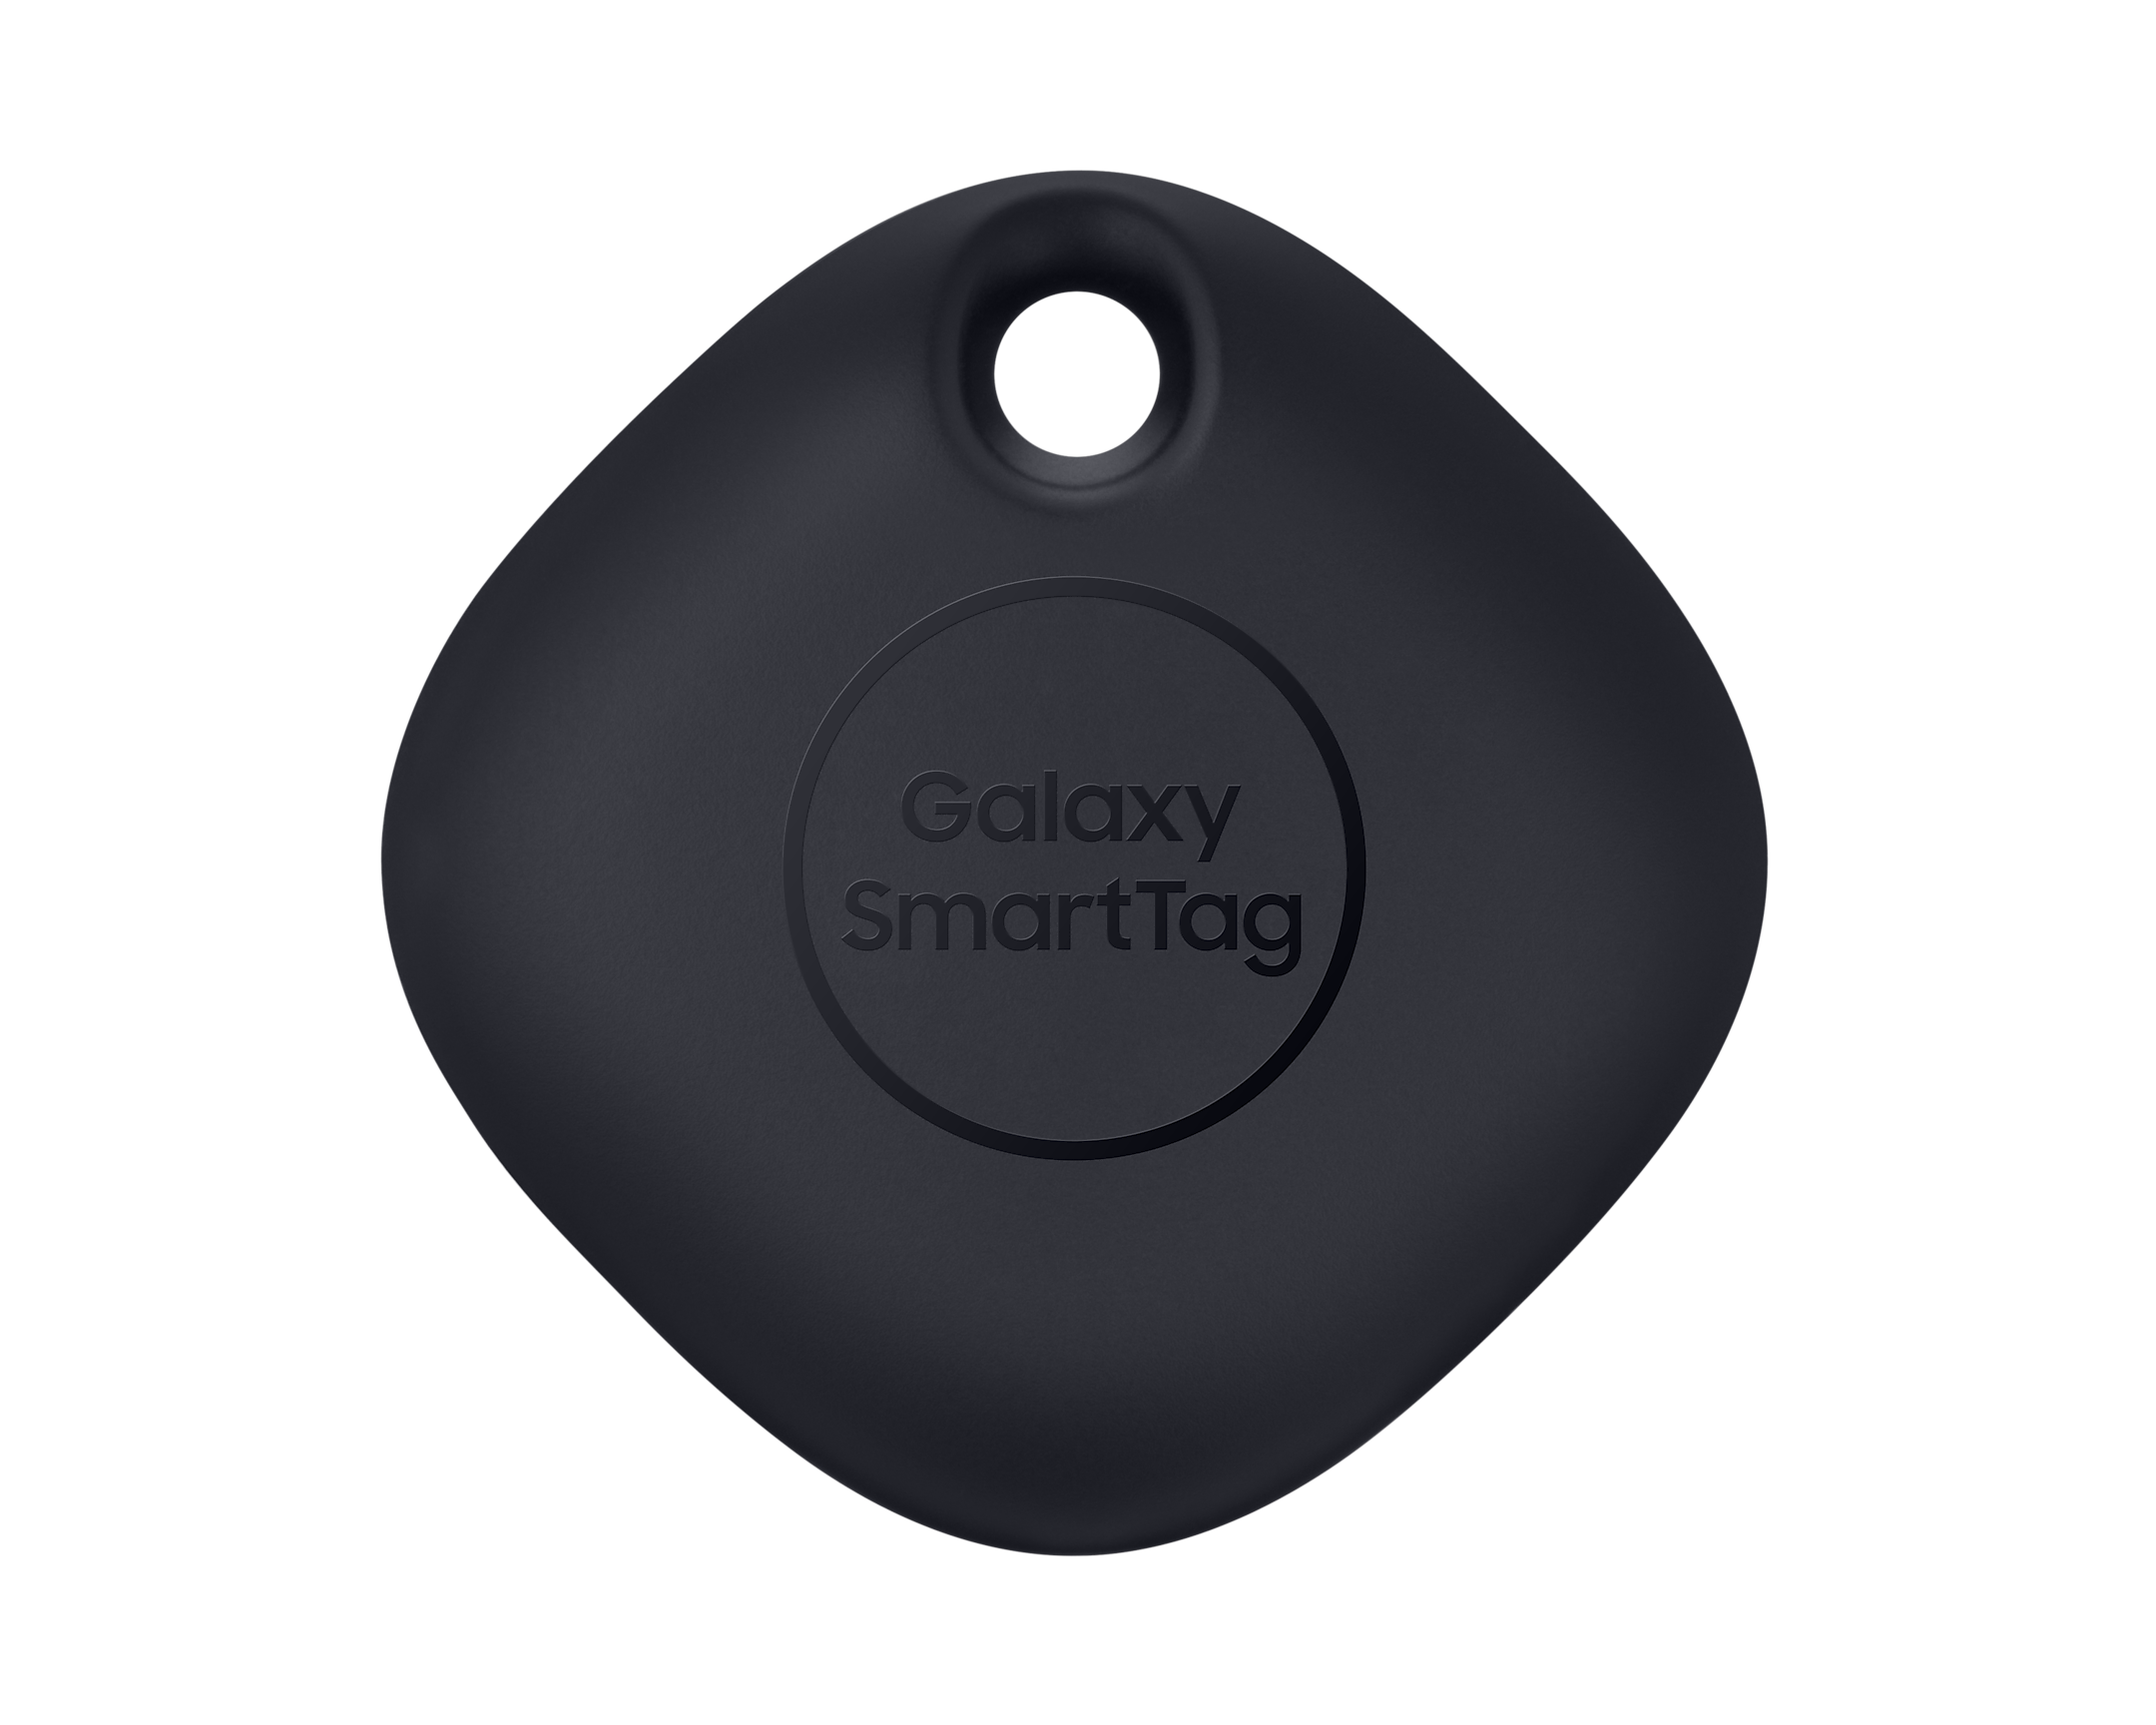 Samsung Galaxy SmartTag El-T5300 Akıllı Takip Cihazı